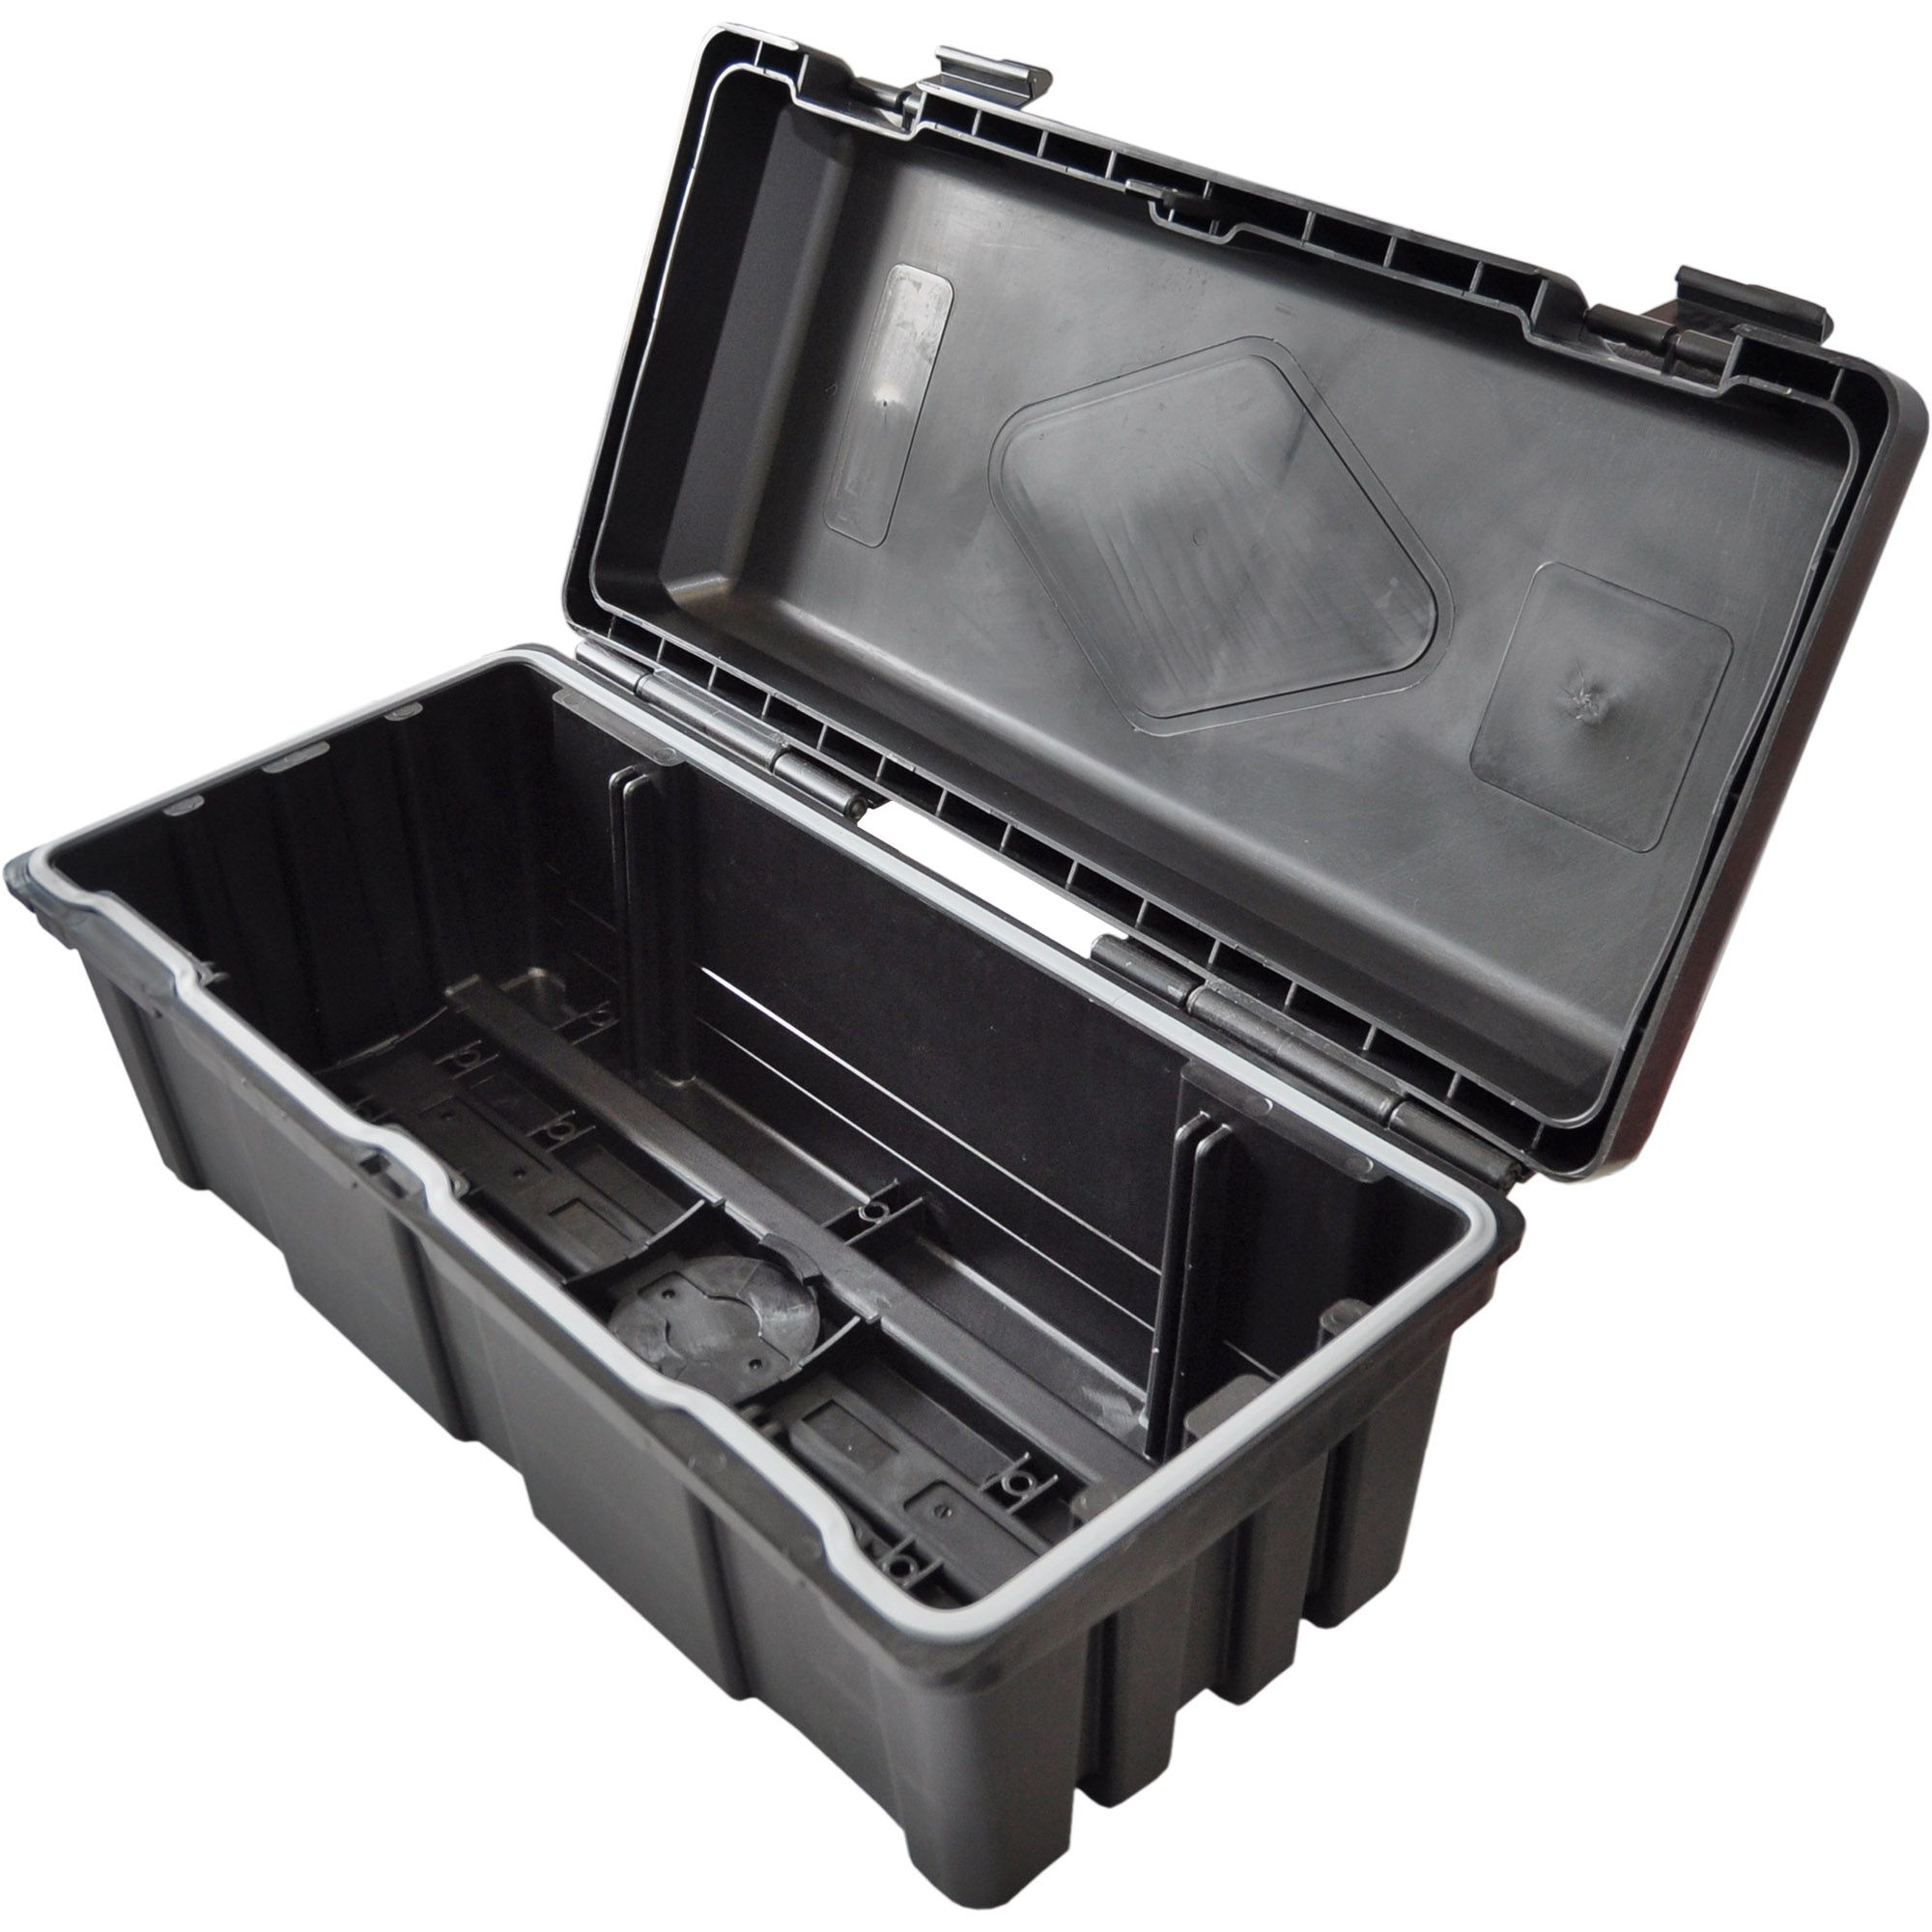 Kunststoff-Staubox PP schwarz  L610 B310 H250 mm